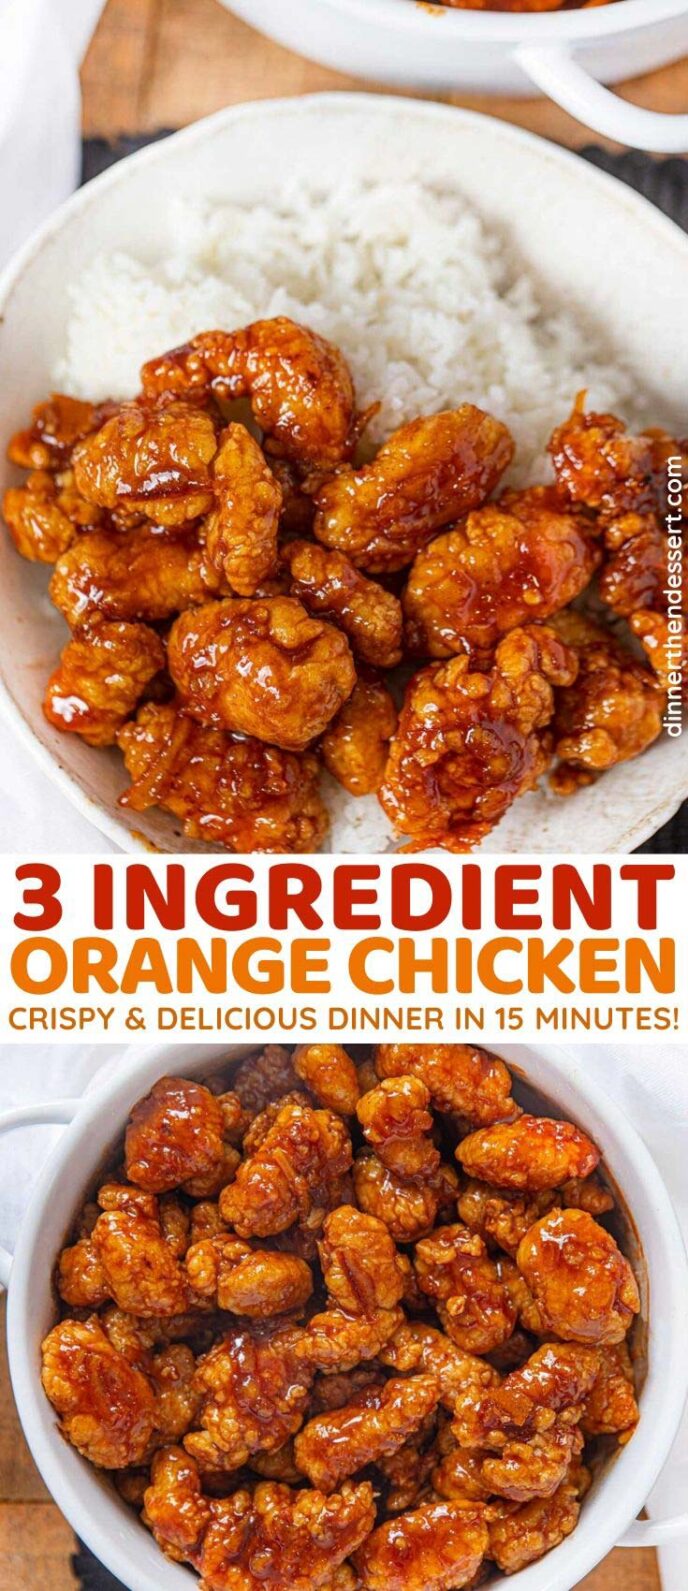 Collage of 3 Ingredient Orange Chicken photos